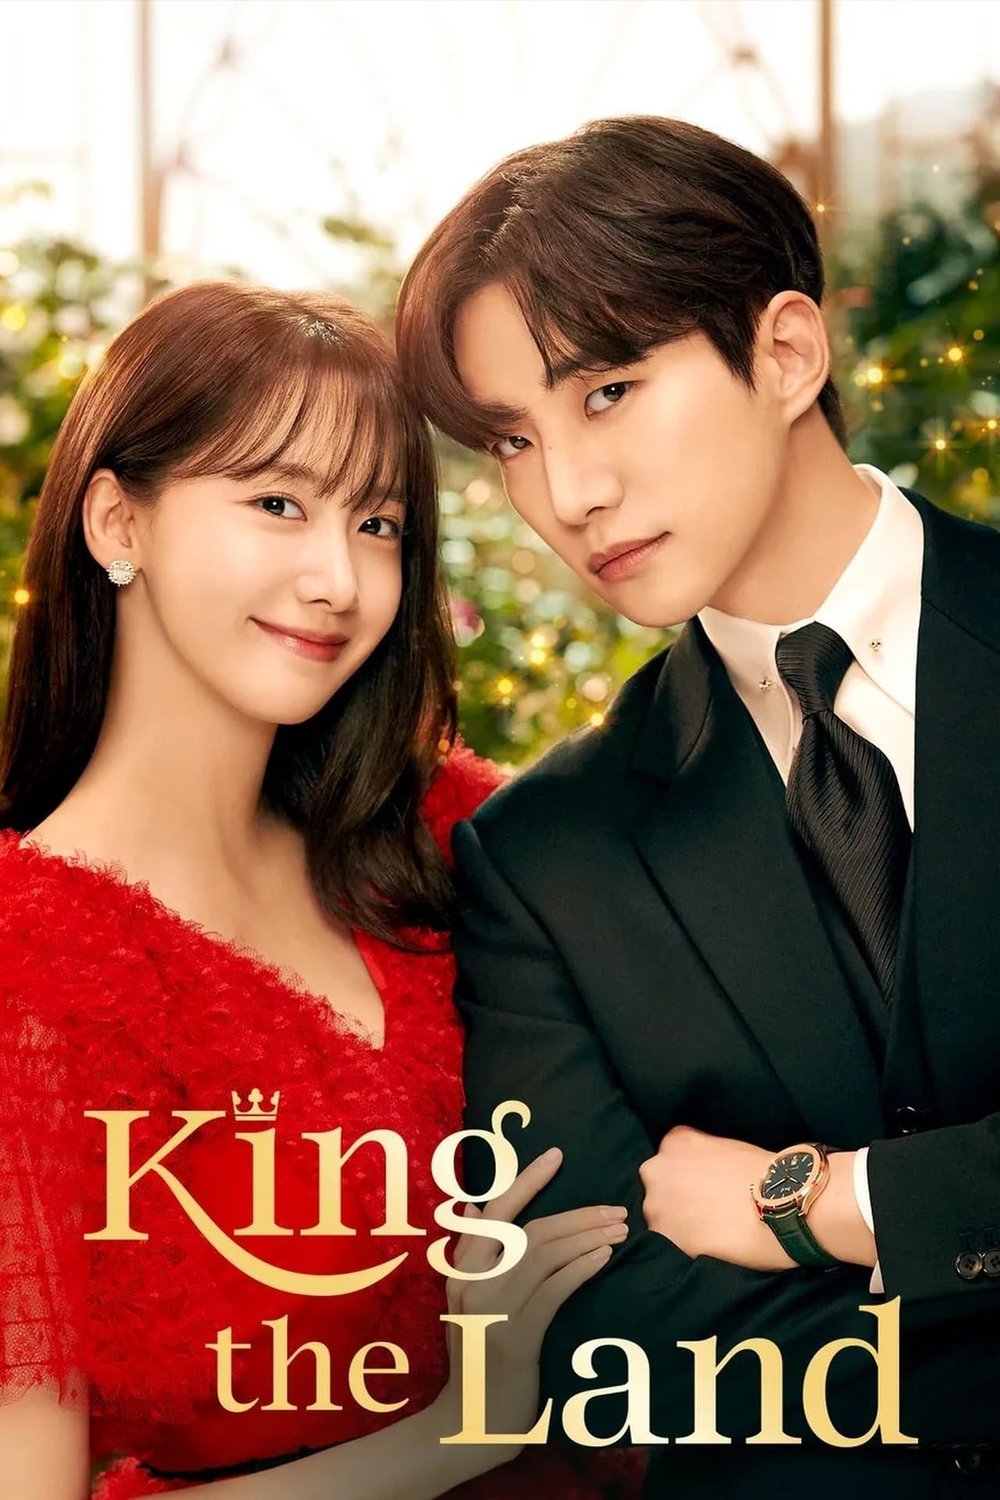 L'affiche originale du film King the Land en coréen